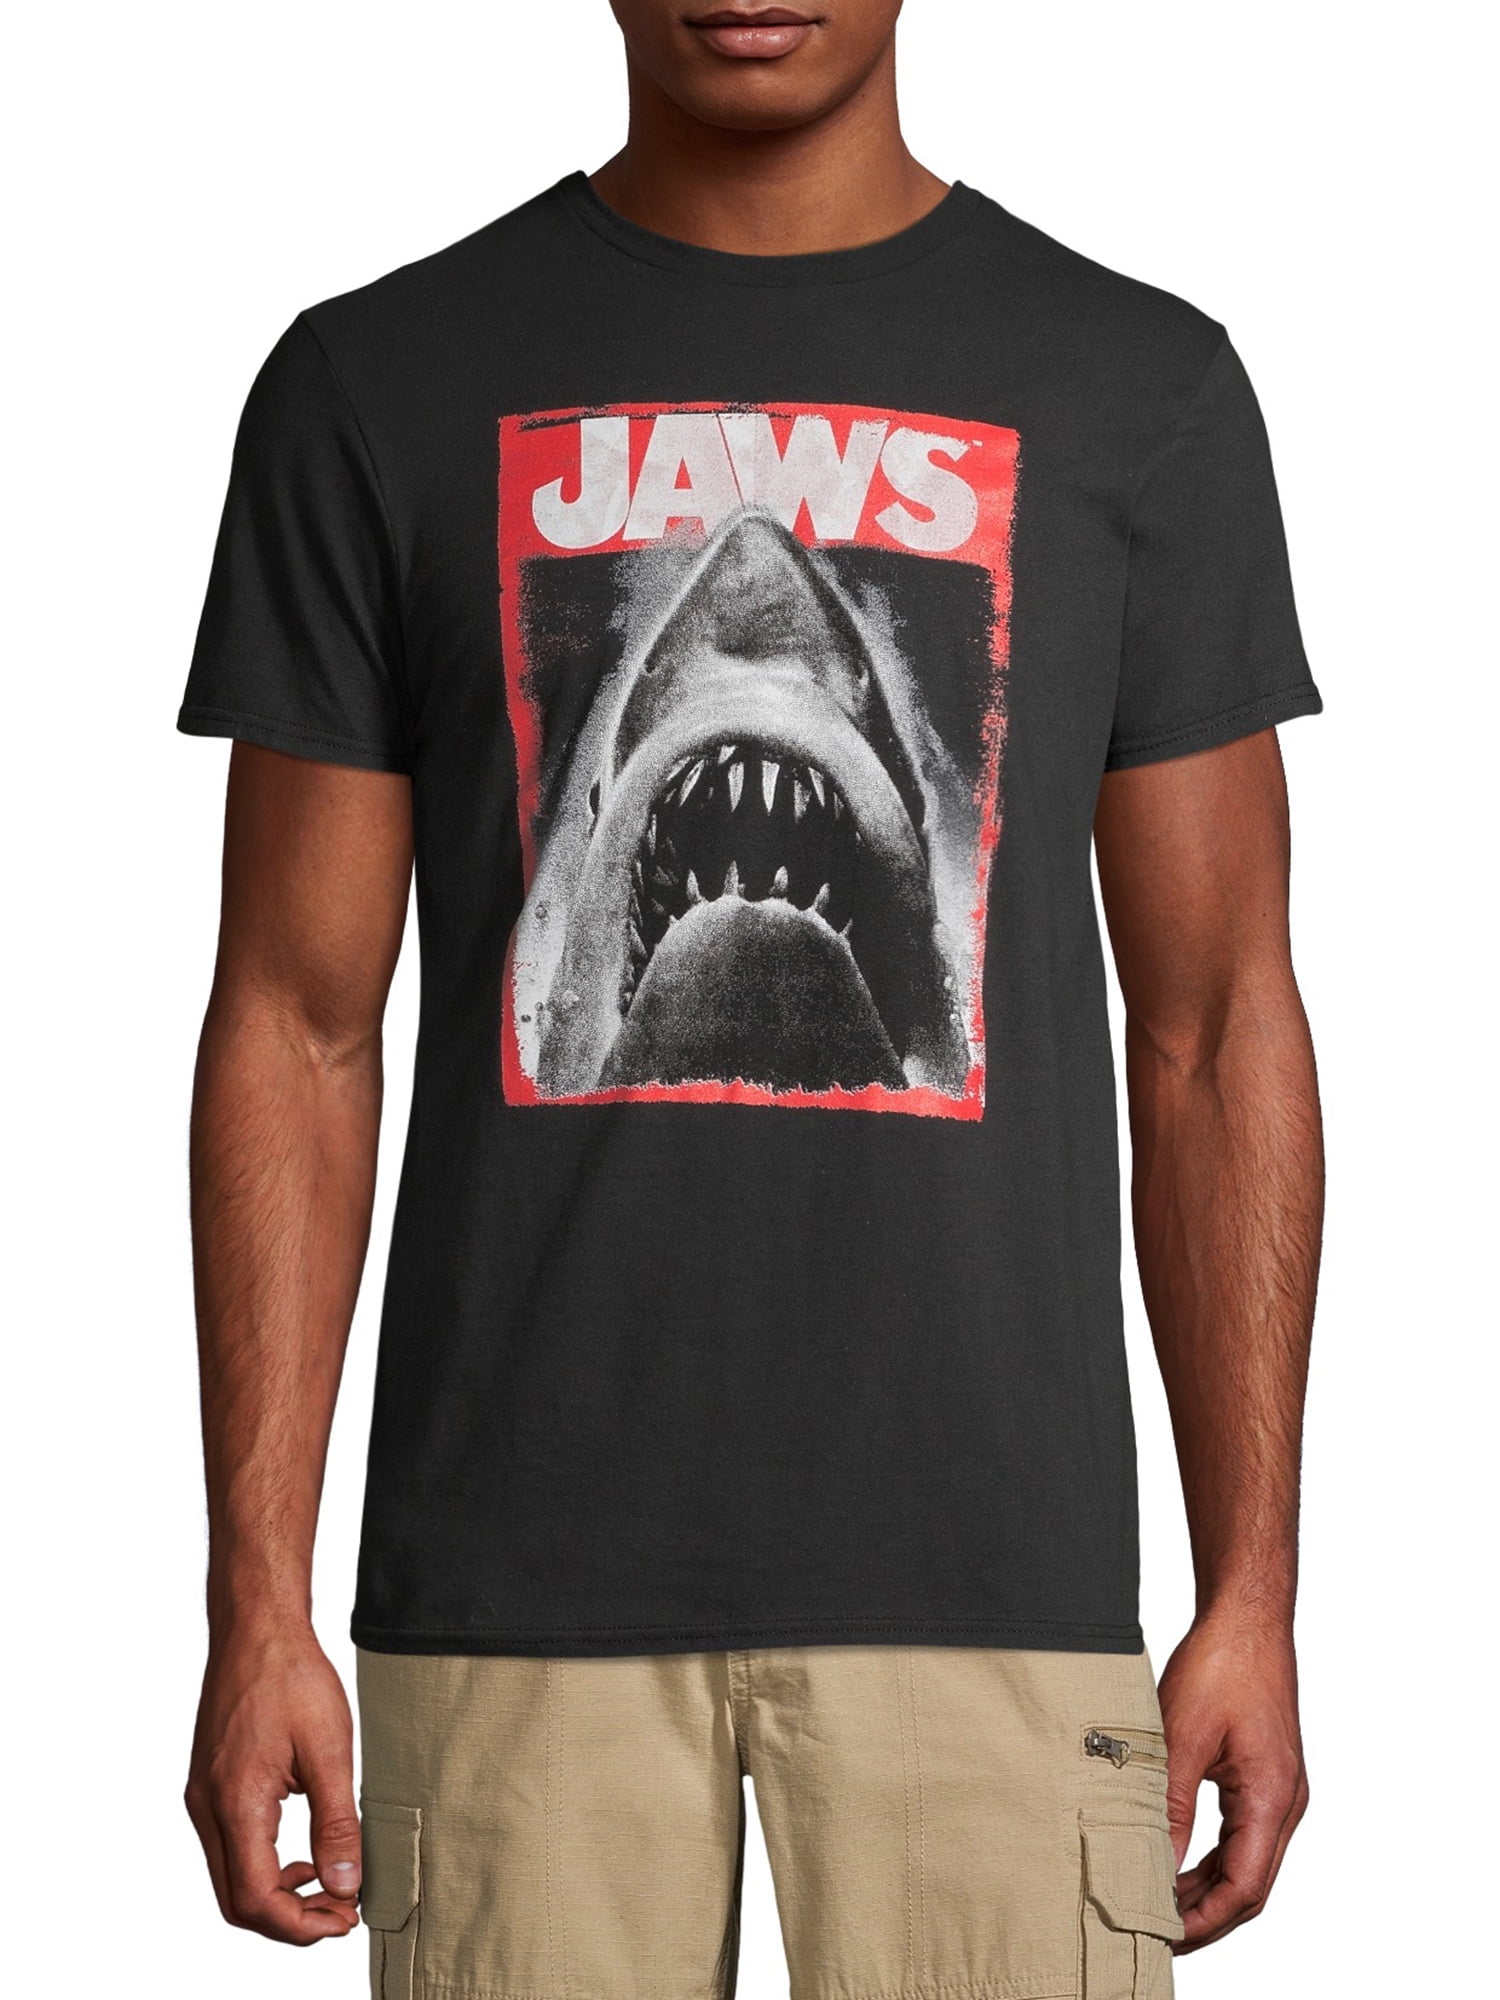 jaws baseball shirt